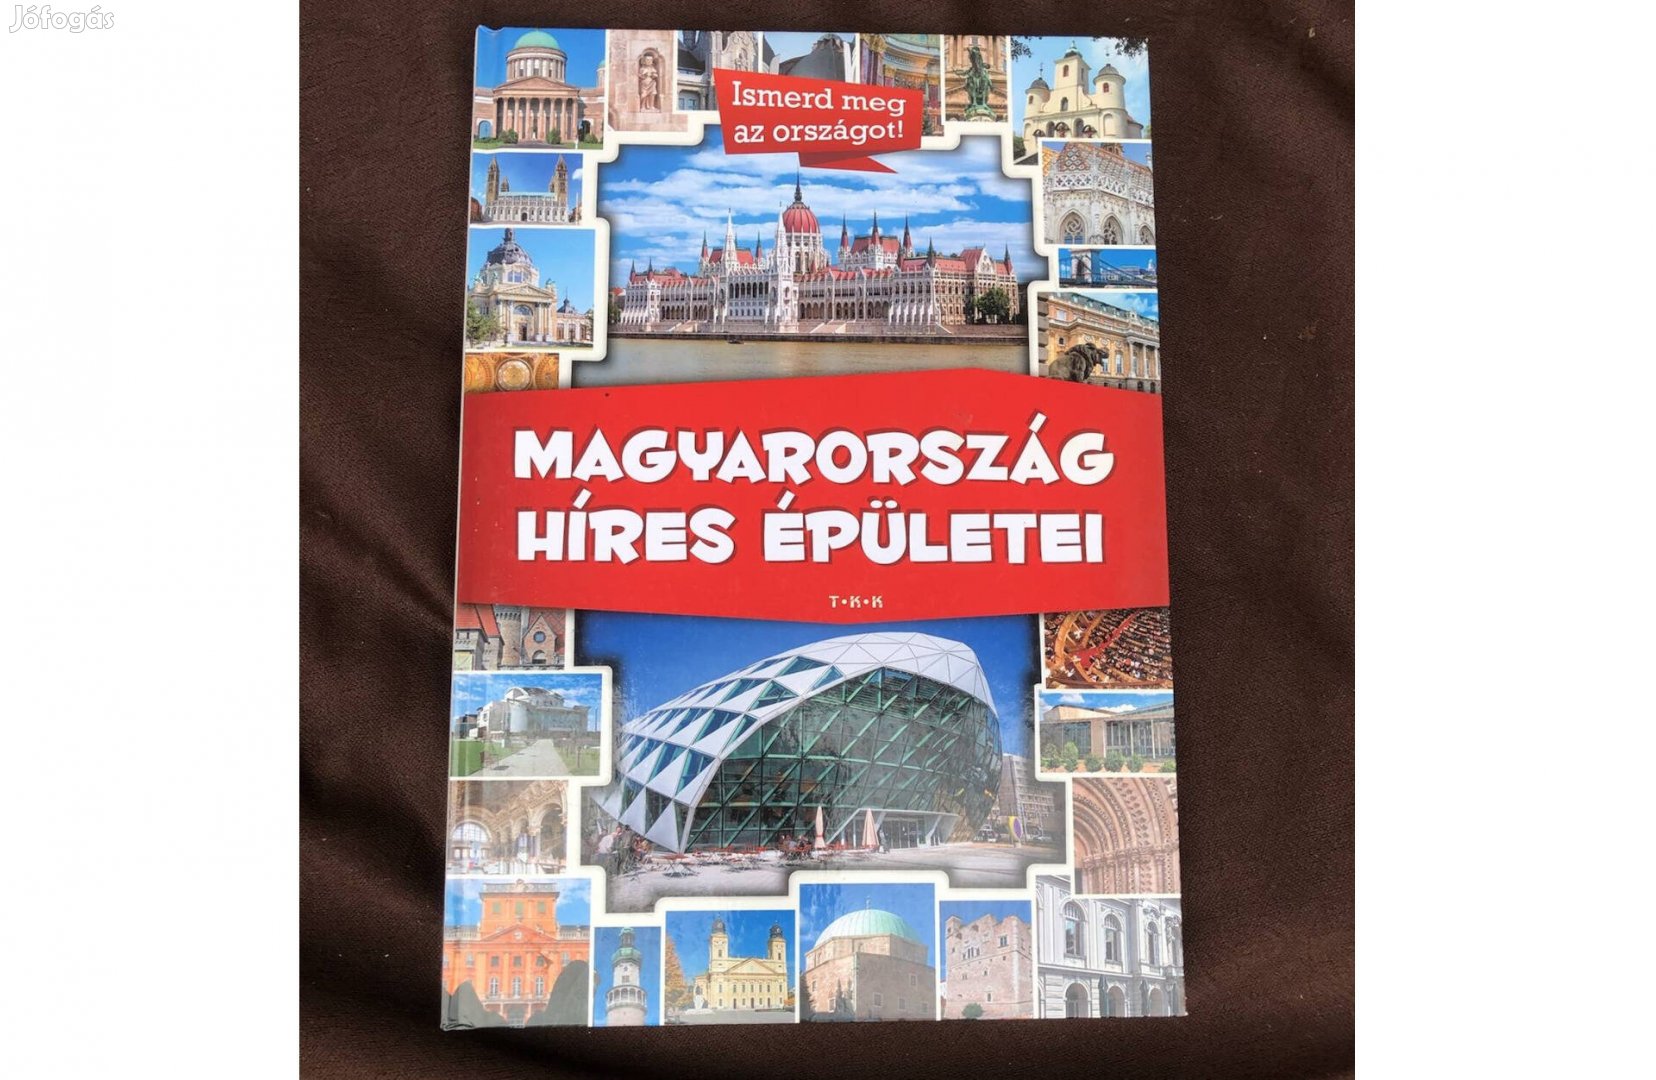 Magyarország híres épületei könyv 1800 ft